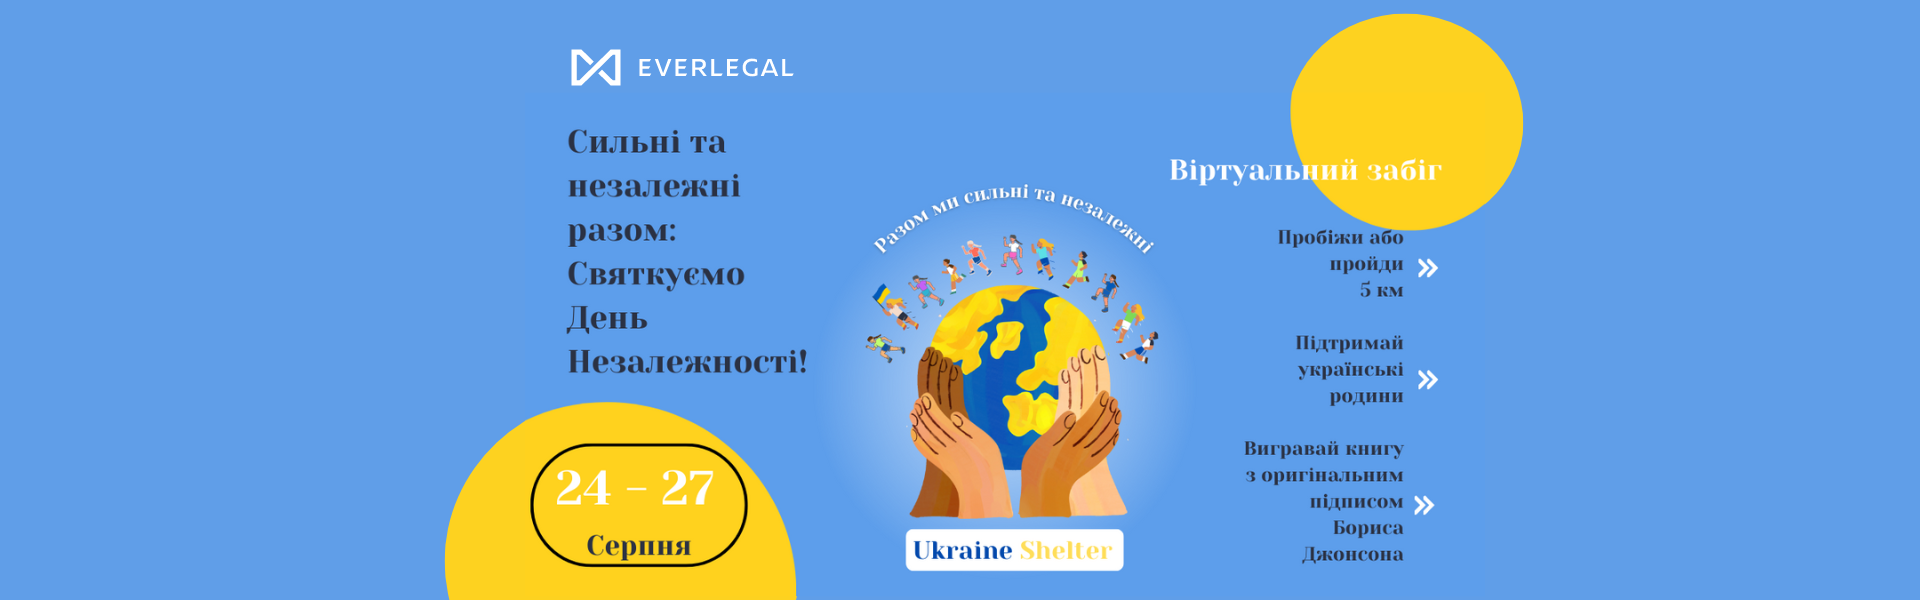 Let's celebrate Ukraine Independence Day together!